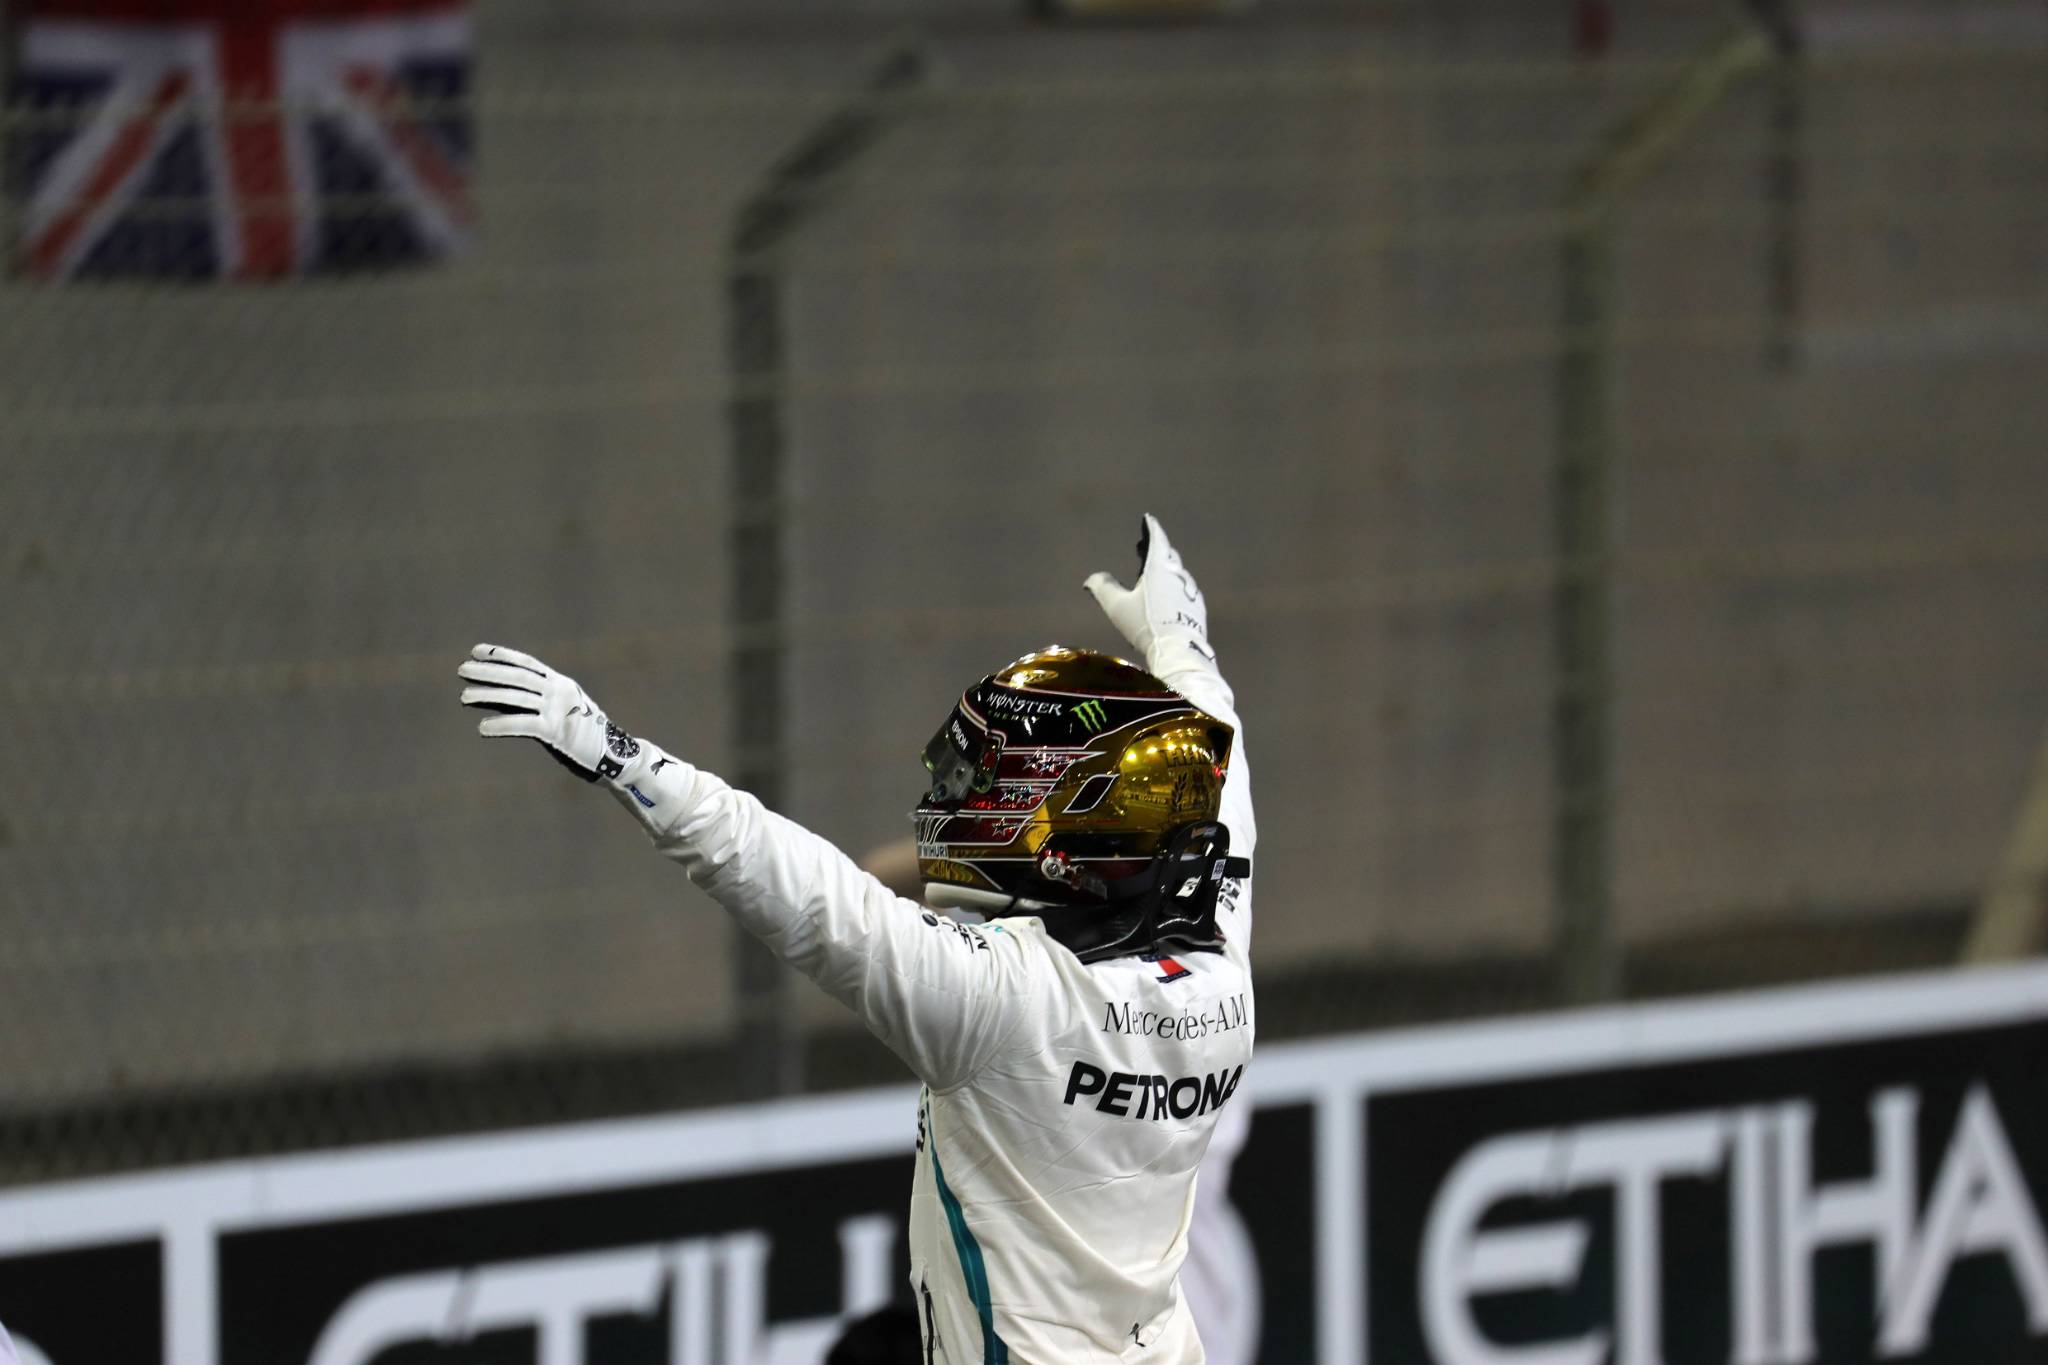 24.11.2018 - Qualifying, Lewis Hamilton (GBR) Mercedes AMG F1 W09 pole position